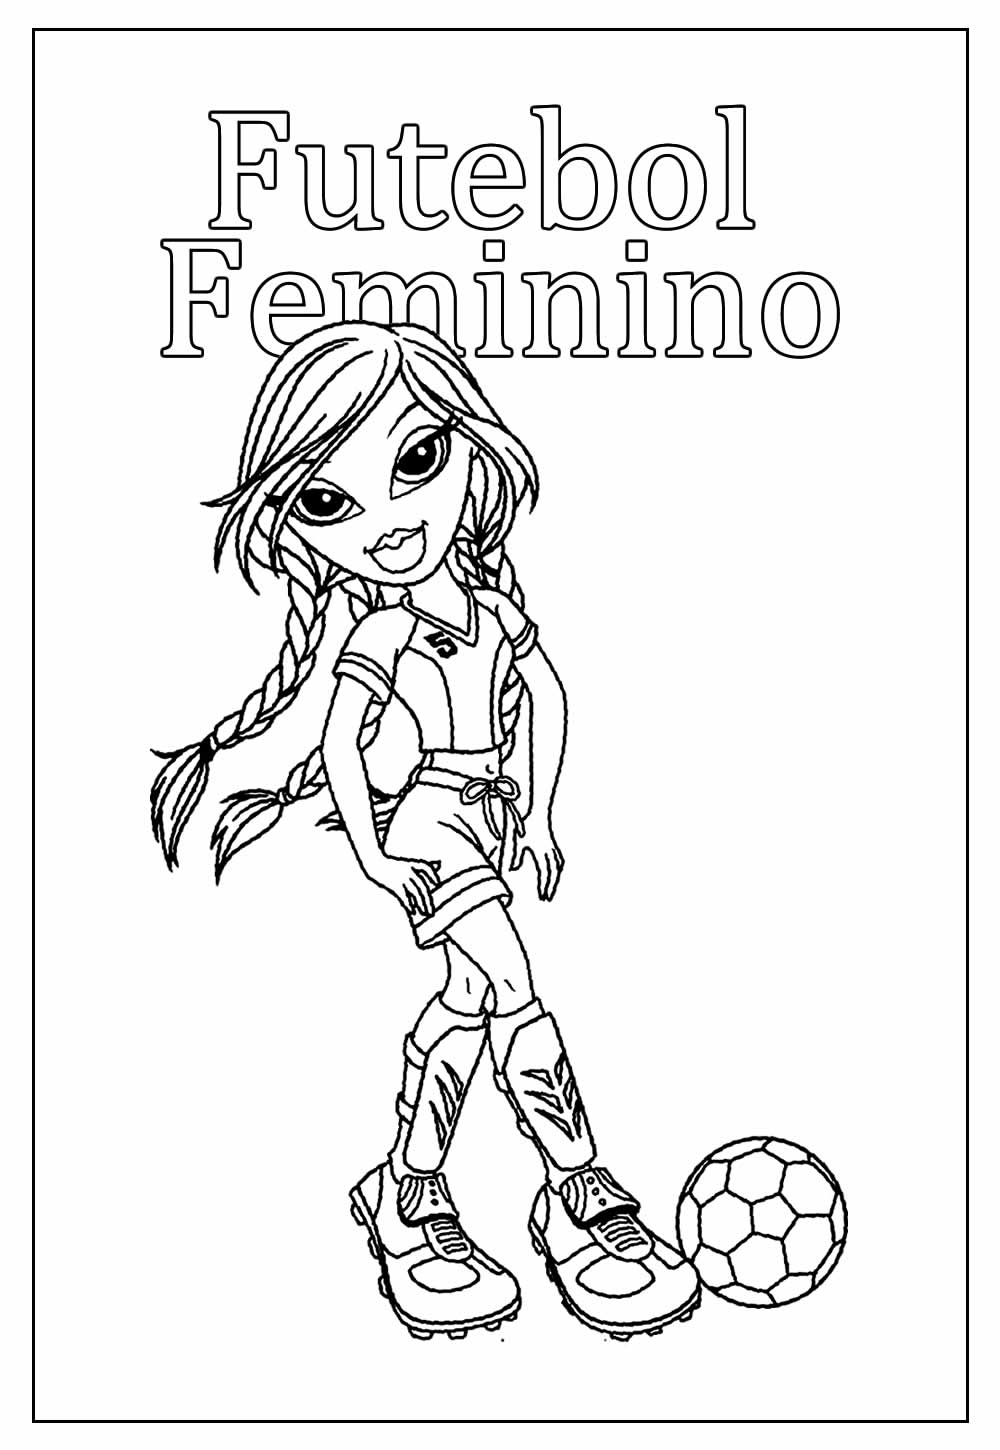 Desenho de Futebol Feminino para pintar